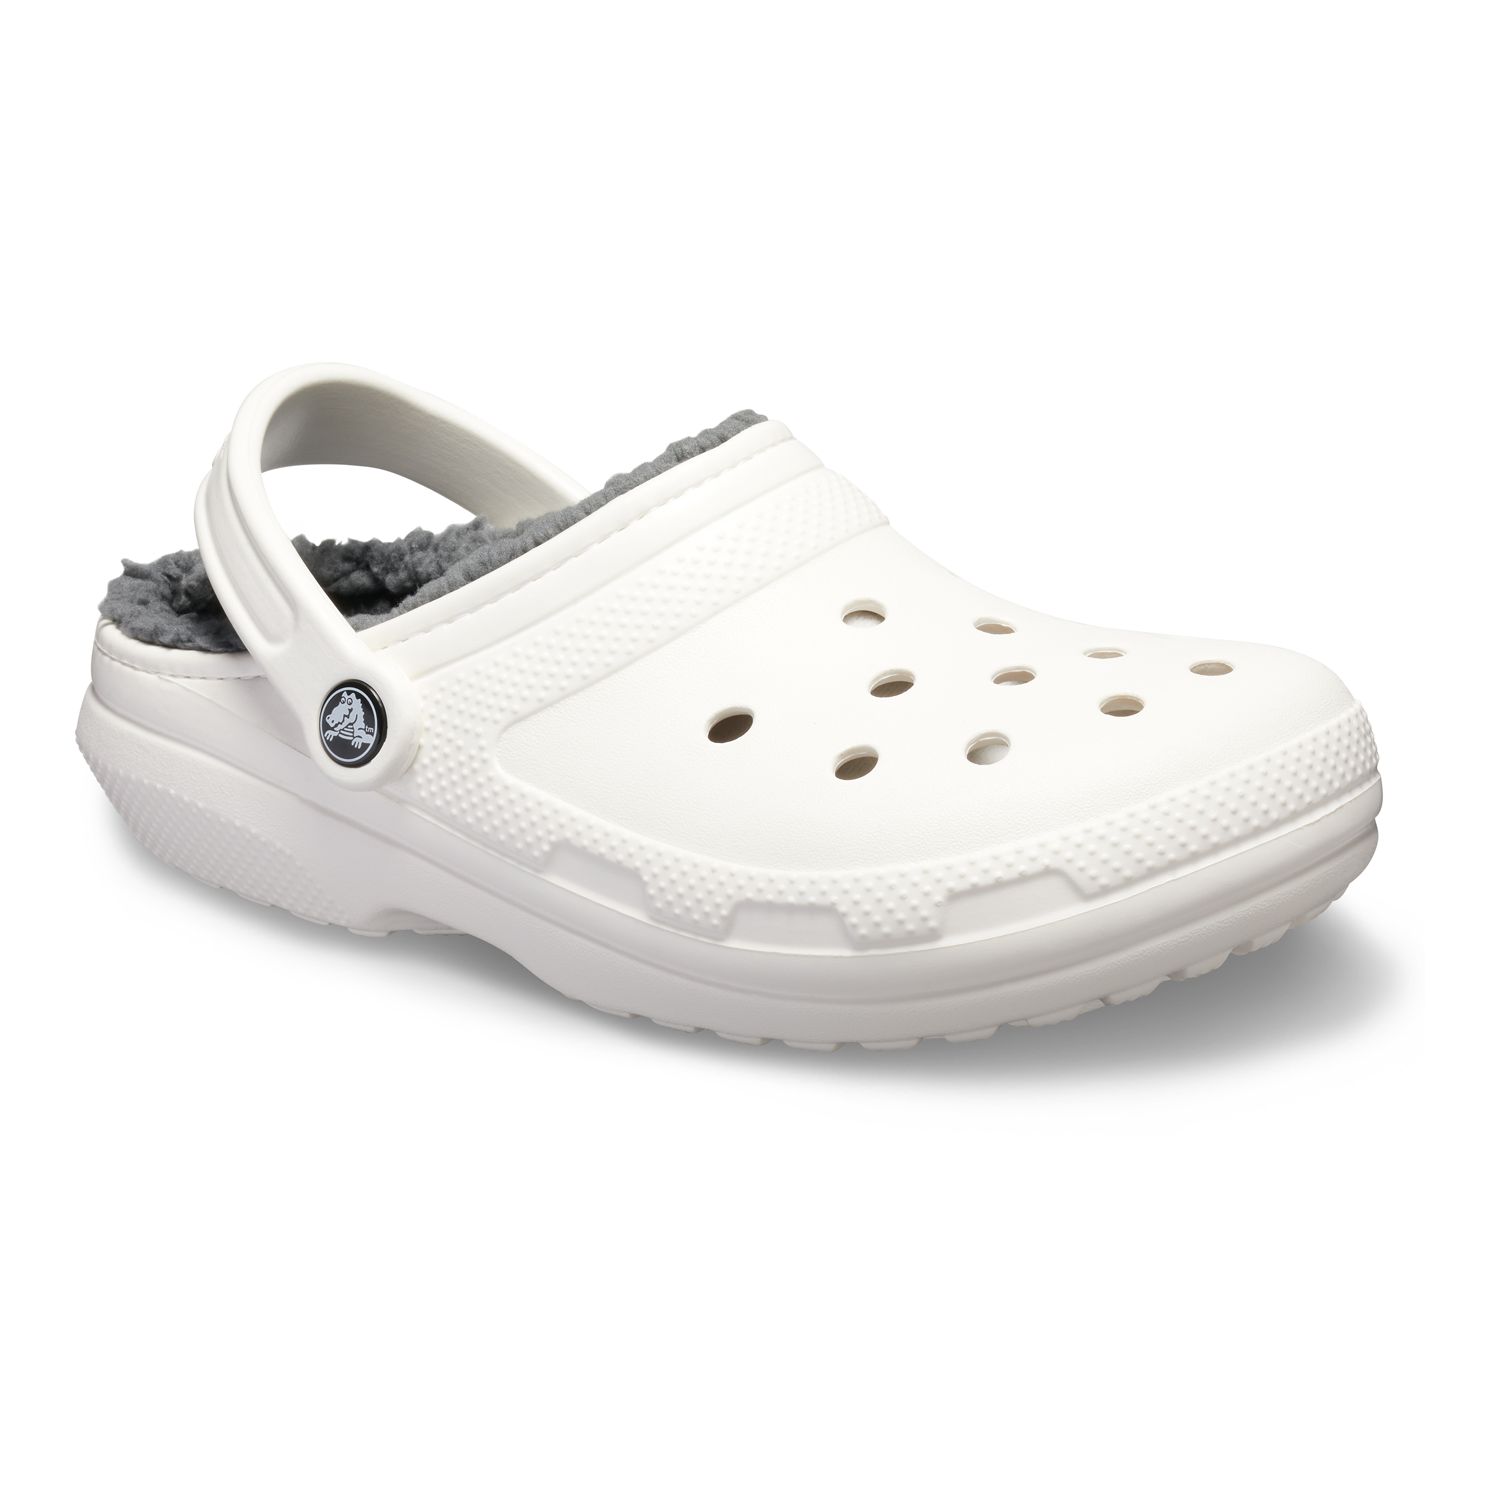 Men's Crocs Shoes: Shop Comfortable 